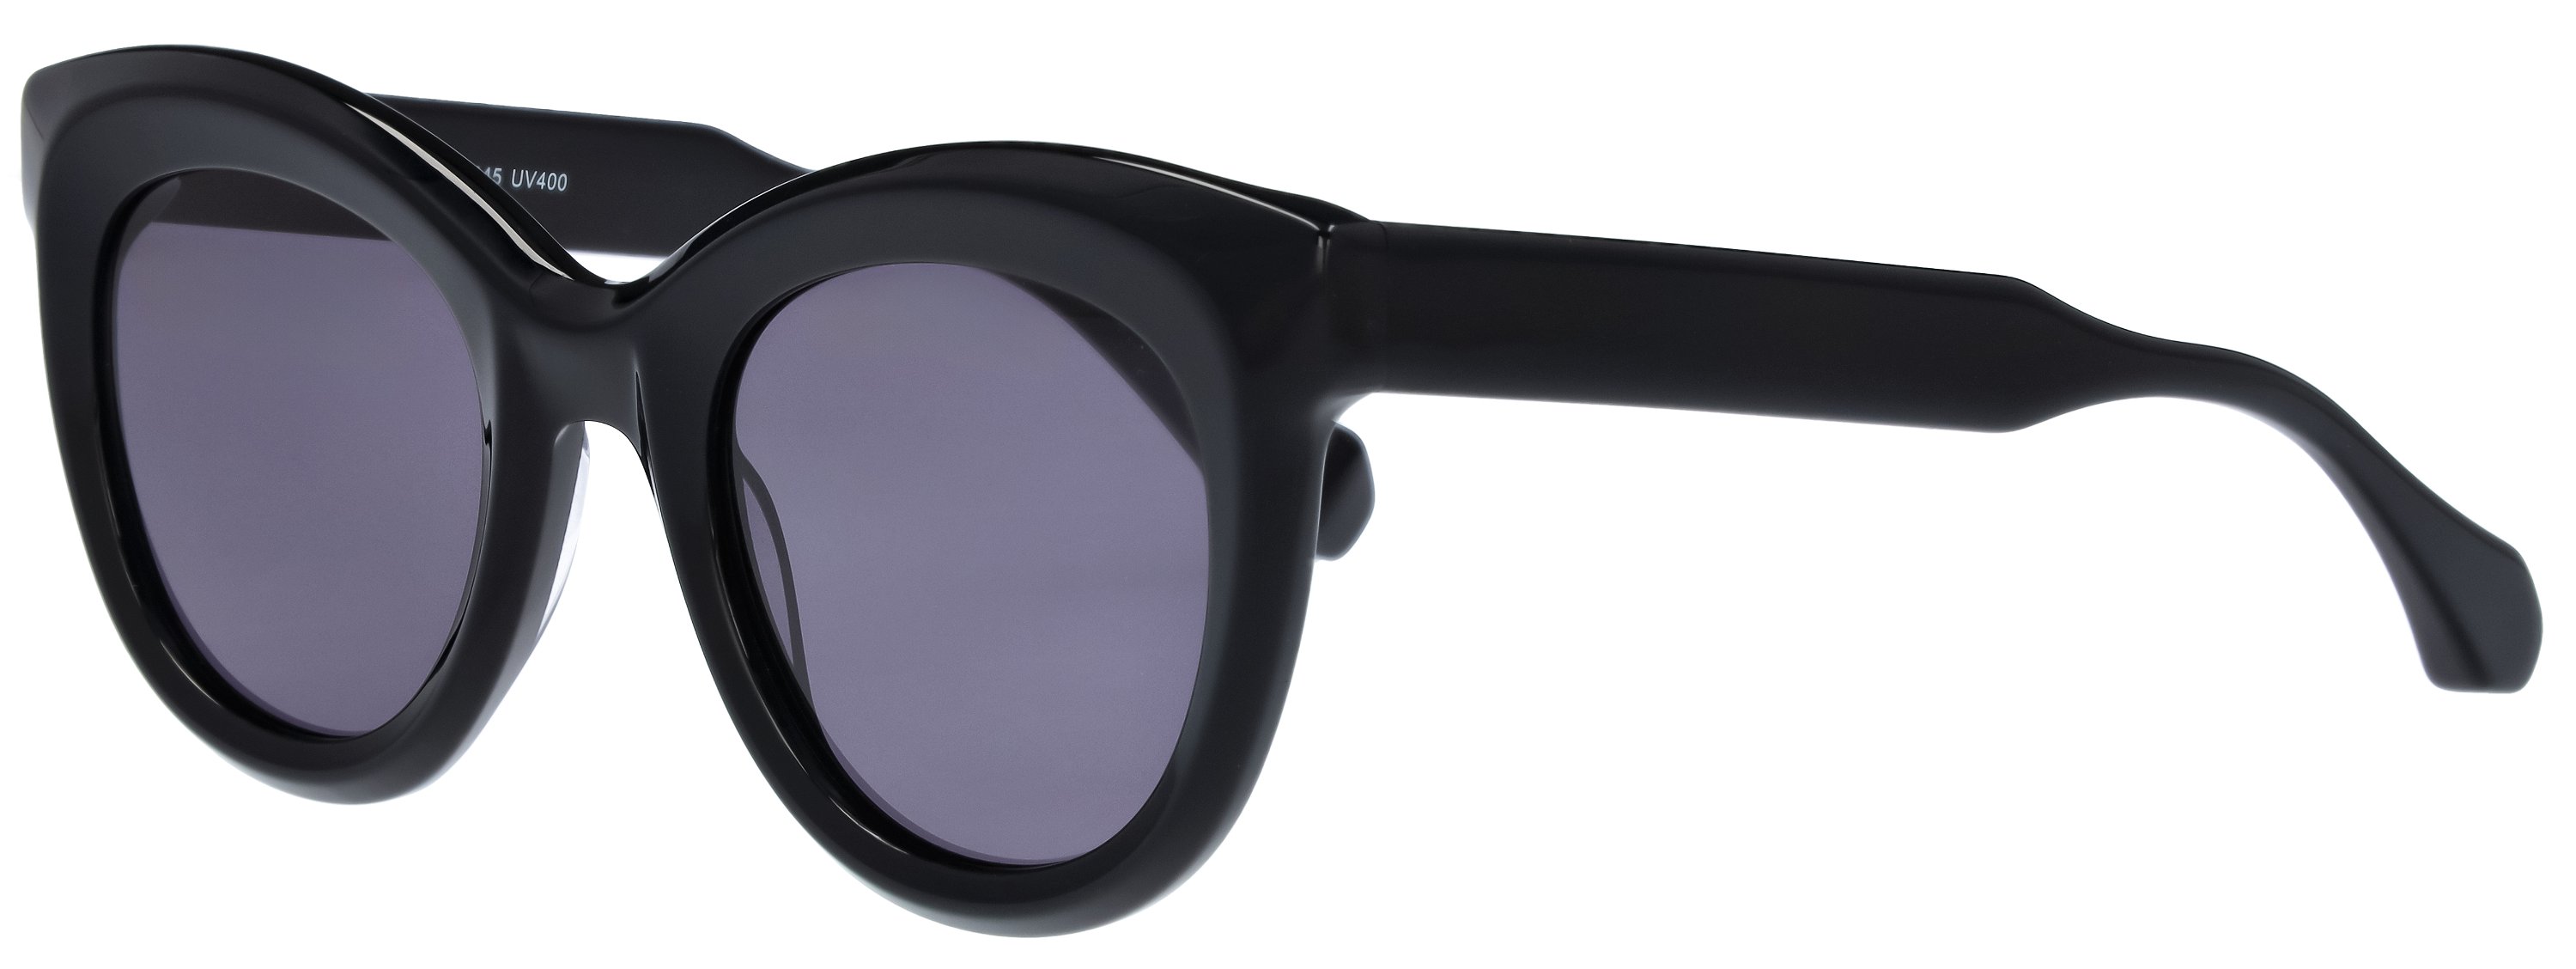 Das Bild zeigt die Sonnenbrille 721301 von der Marke Abele Optik in schwarz